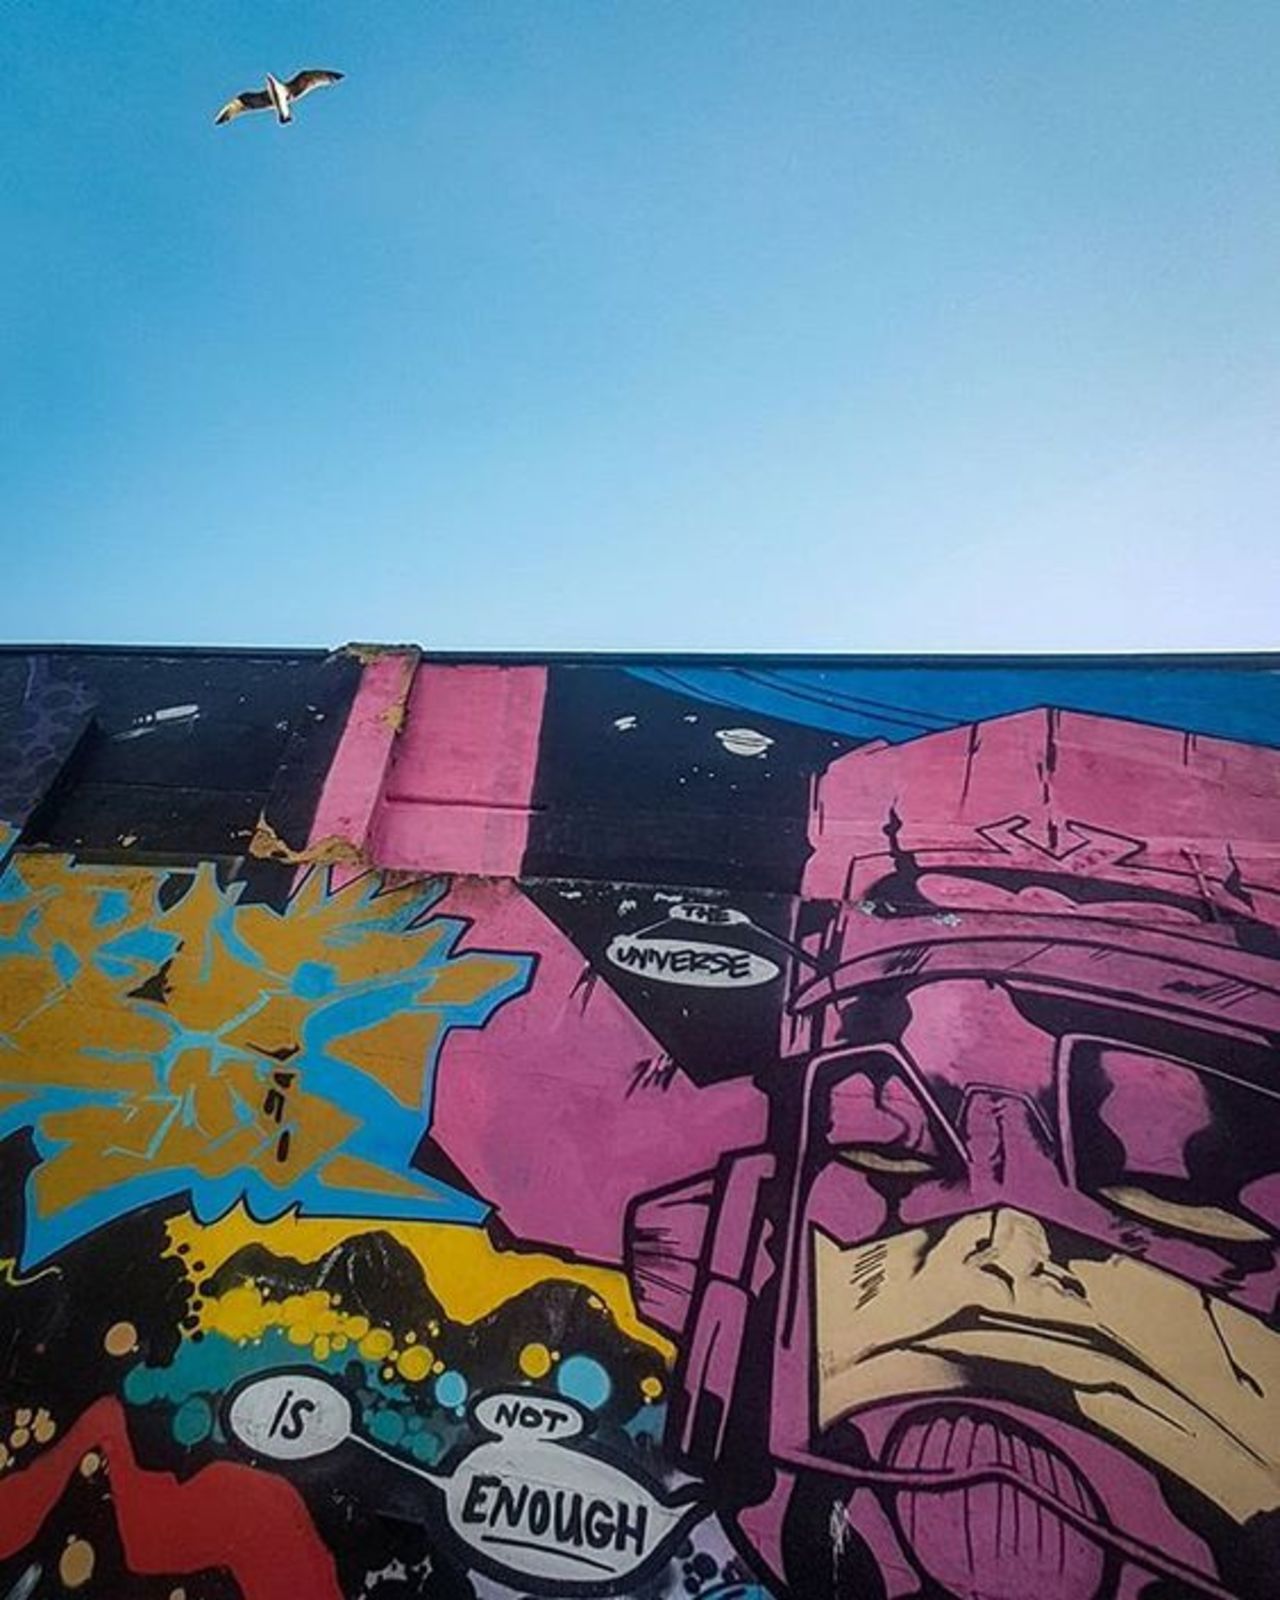 Galactus Mural- IDK the Artist #streetart #art #graffiti #mural https://t.co/FofGeMy2Cy